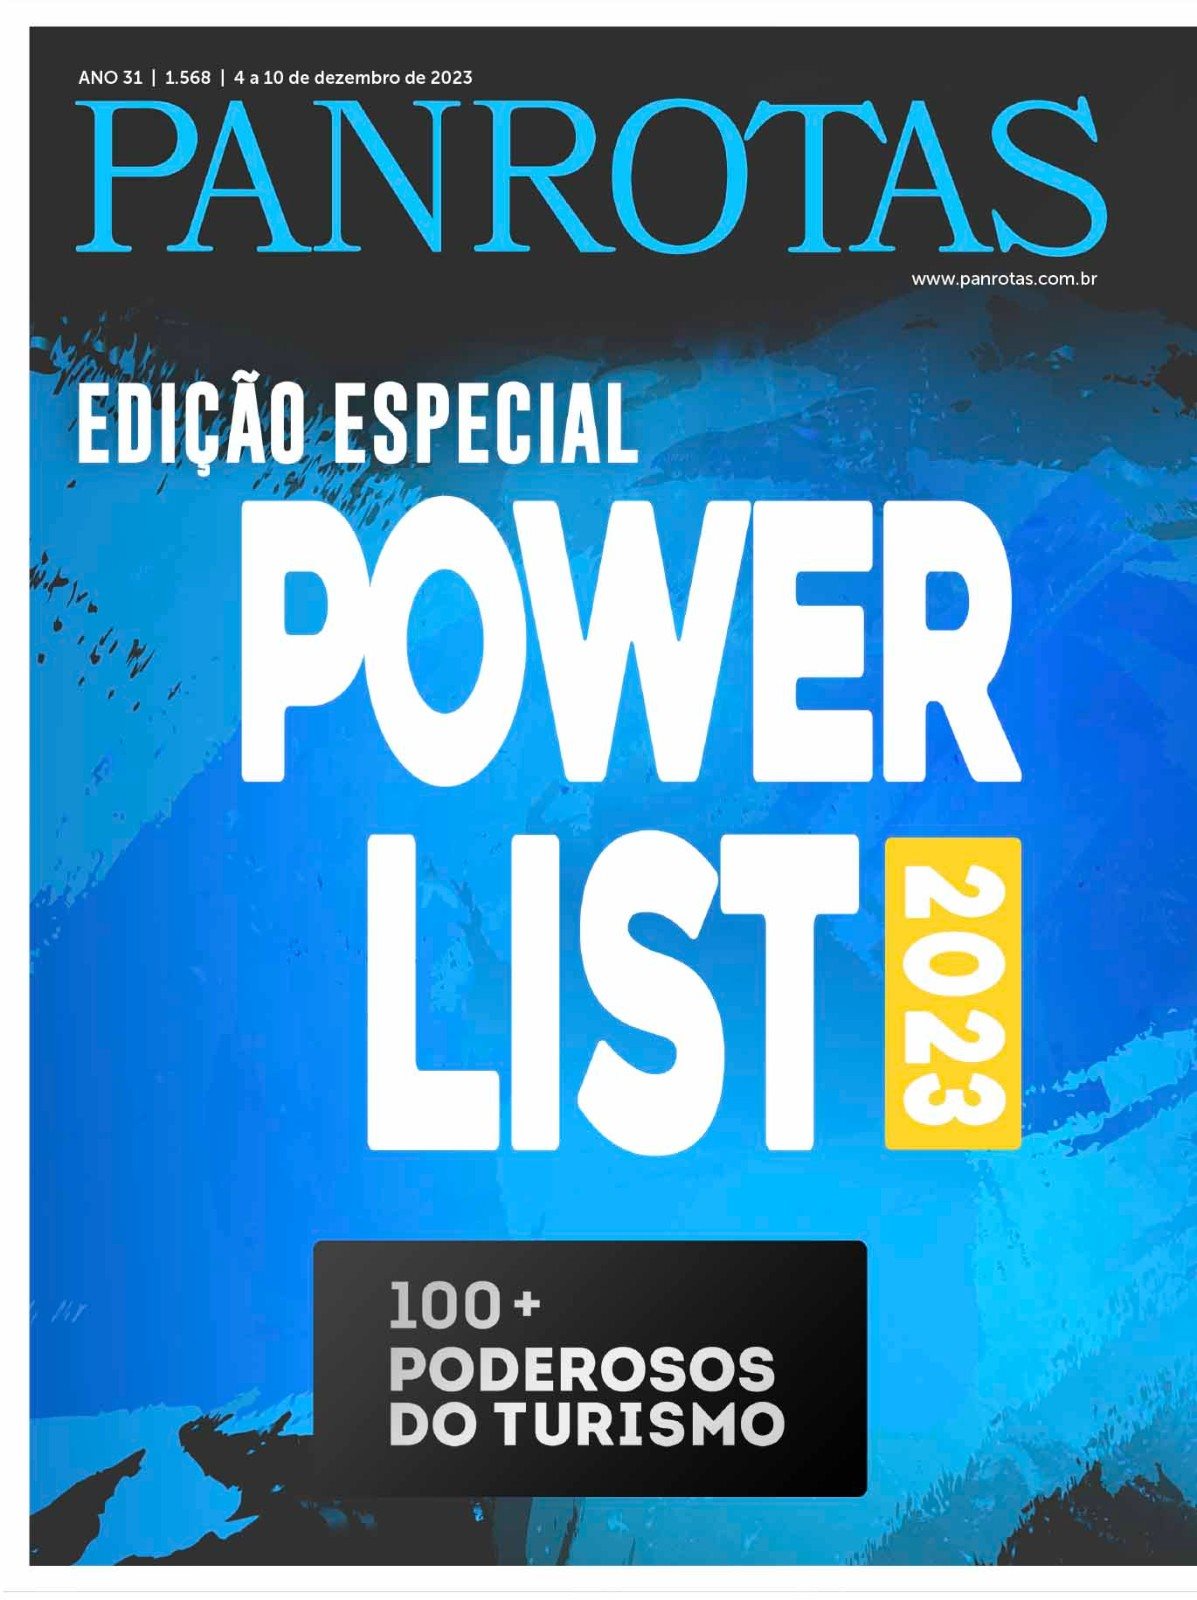 Edição 1.568 da Revista PANROTAS traz a lista dos 100+ Poderosos do Turismo